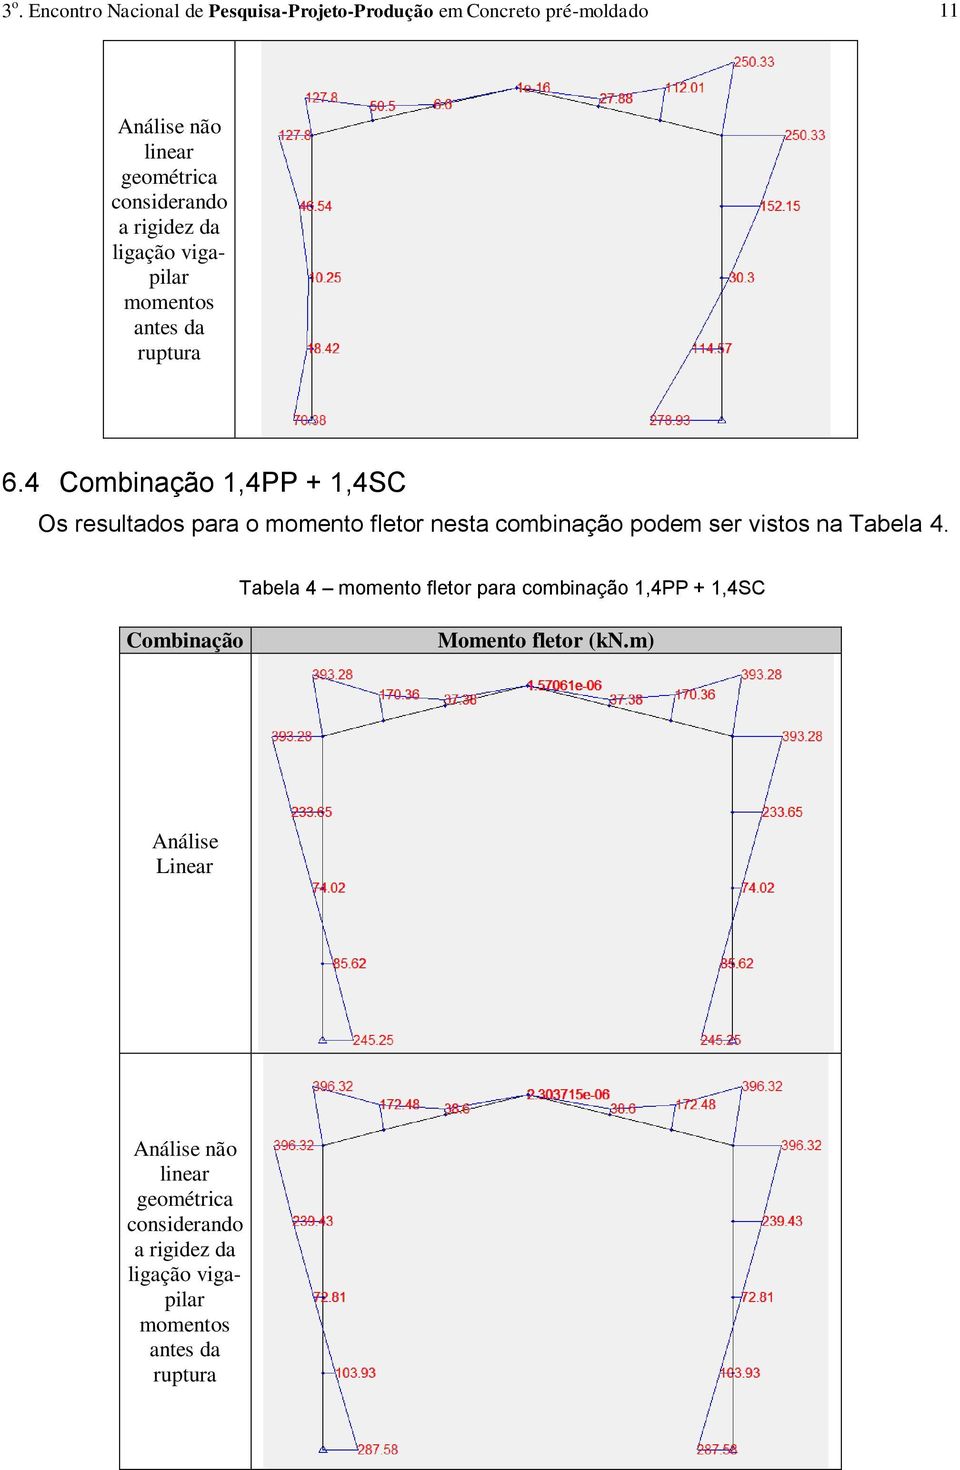 4 Combinação 1,4PP + 1,4SC Os resultados para o momento fletor nesta combinação podem ser vistos na Tabela 4.